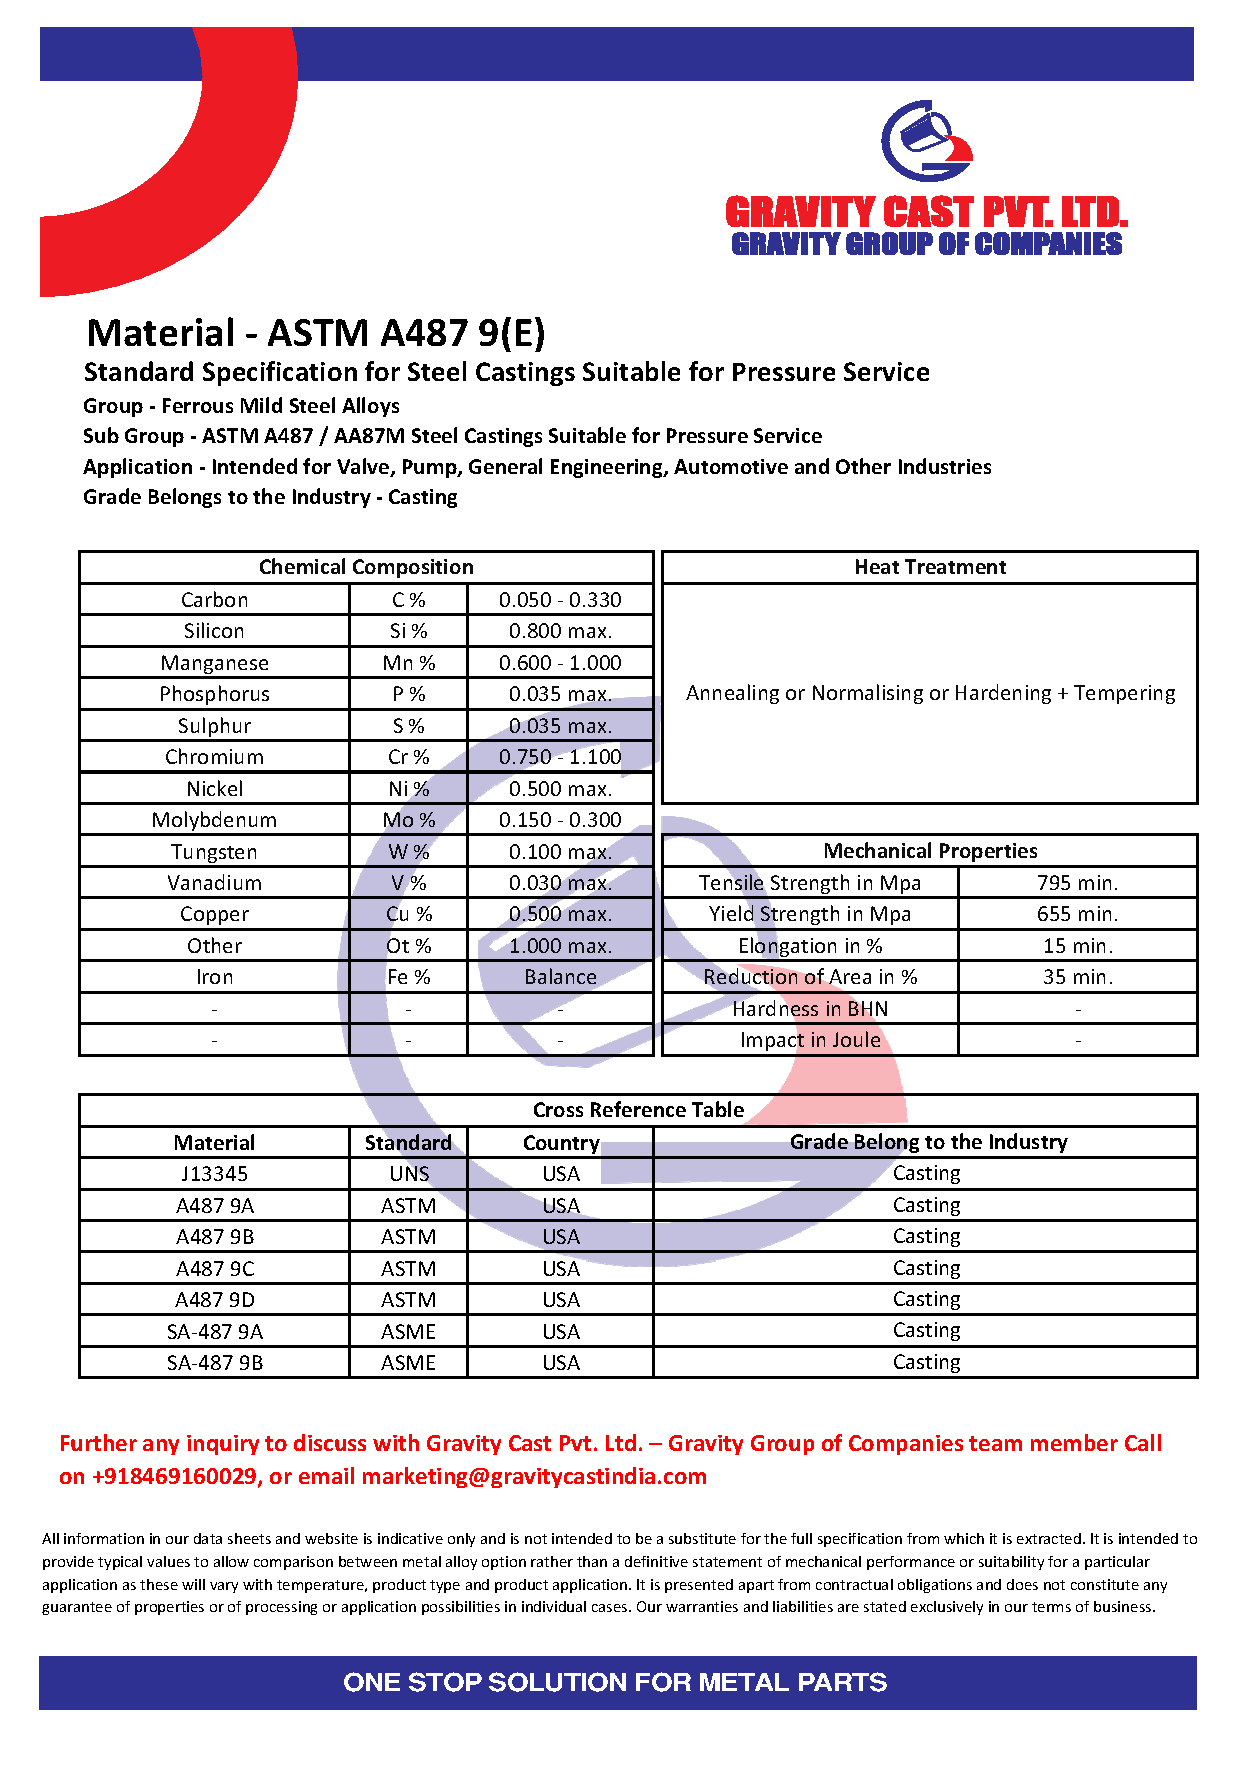 ASTM A487 9(E).pdf